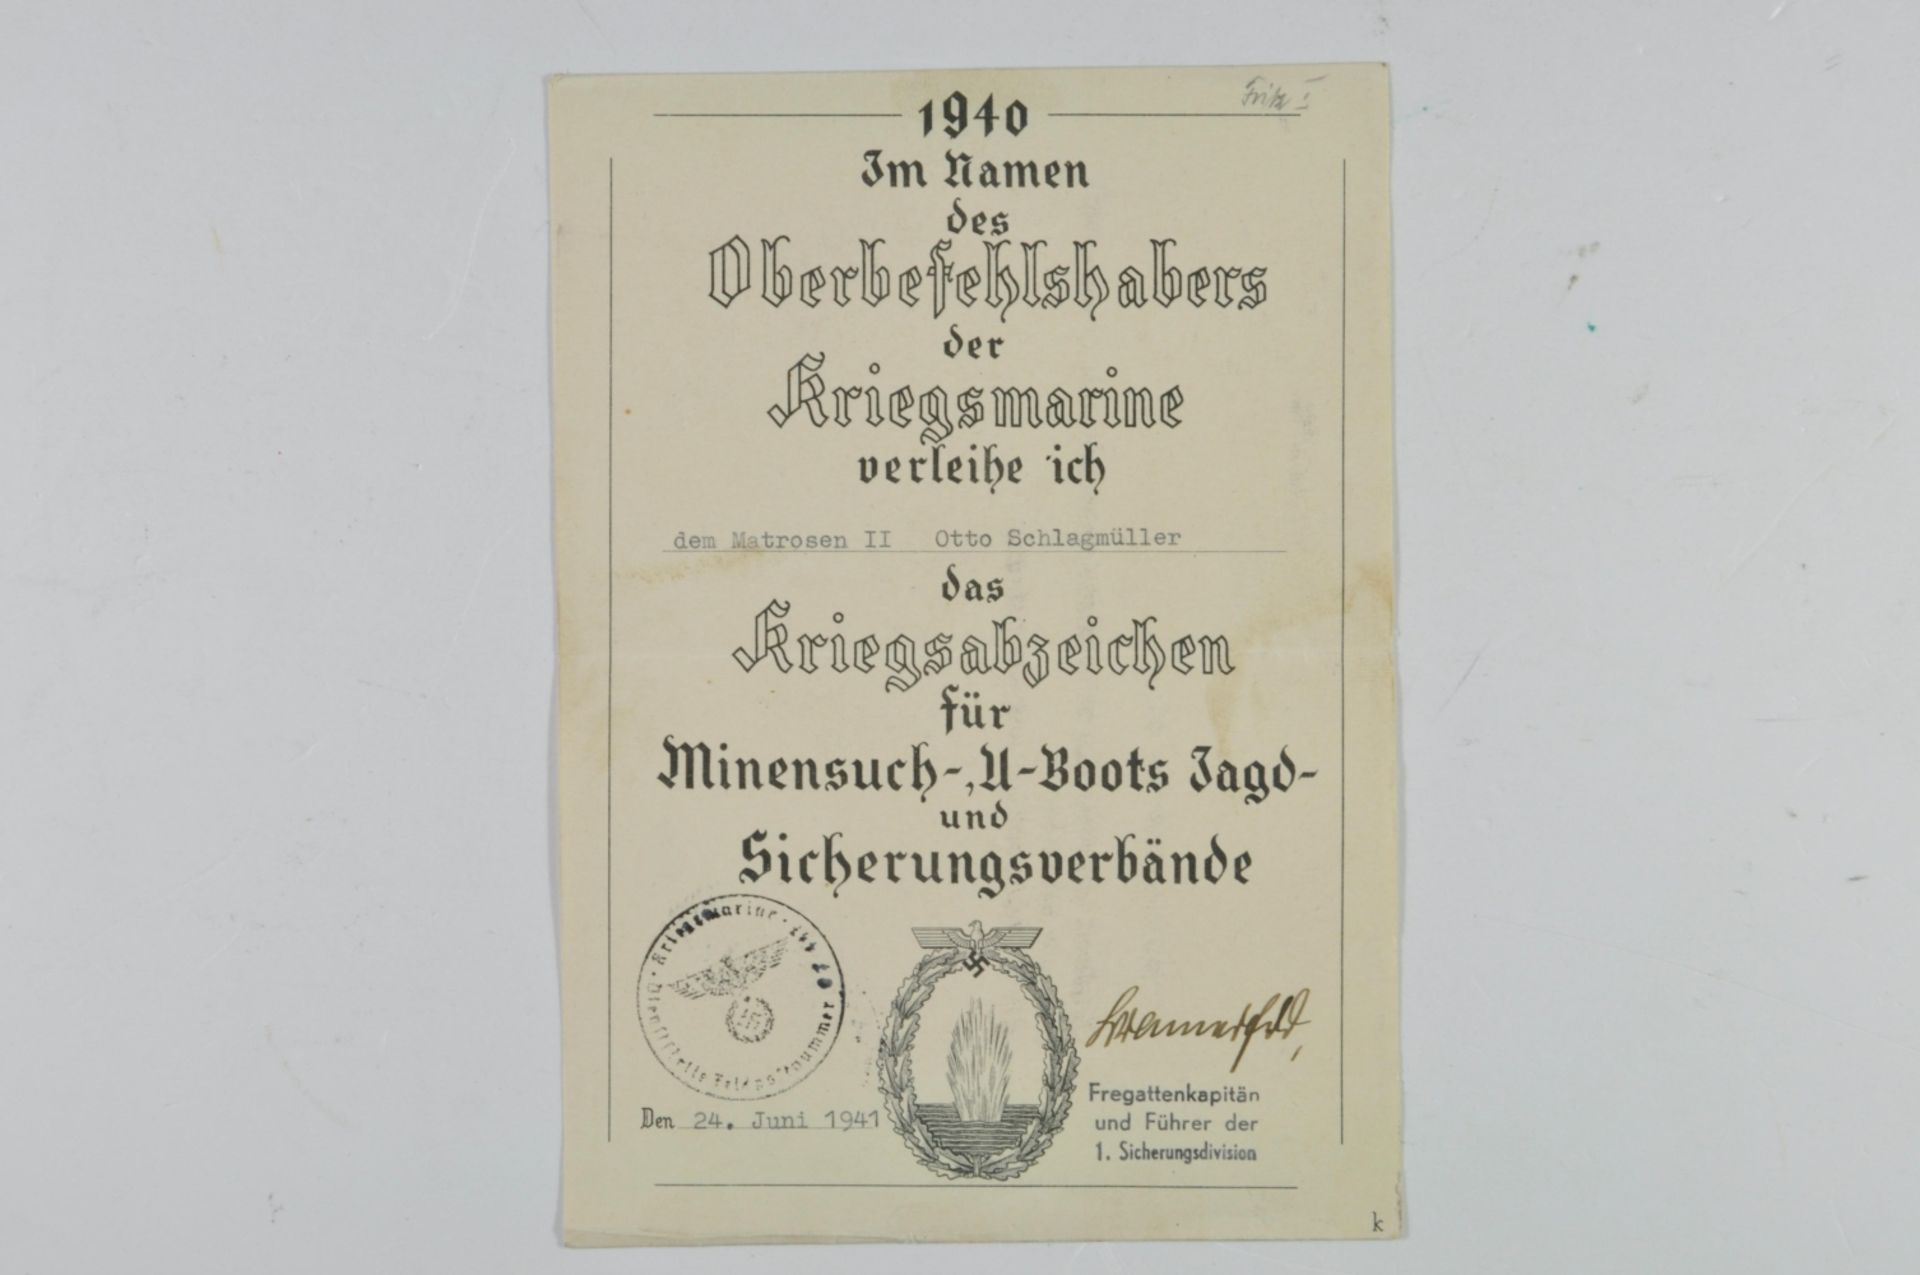 Schmuck-Urkunde für das Kriegsabzeichen für Minensuch-U-Boots Jagd- und Sicherungsverbände, datiert